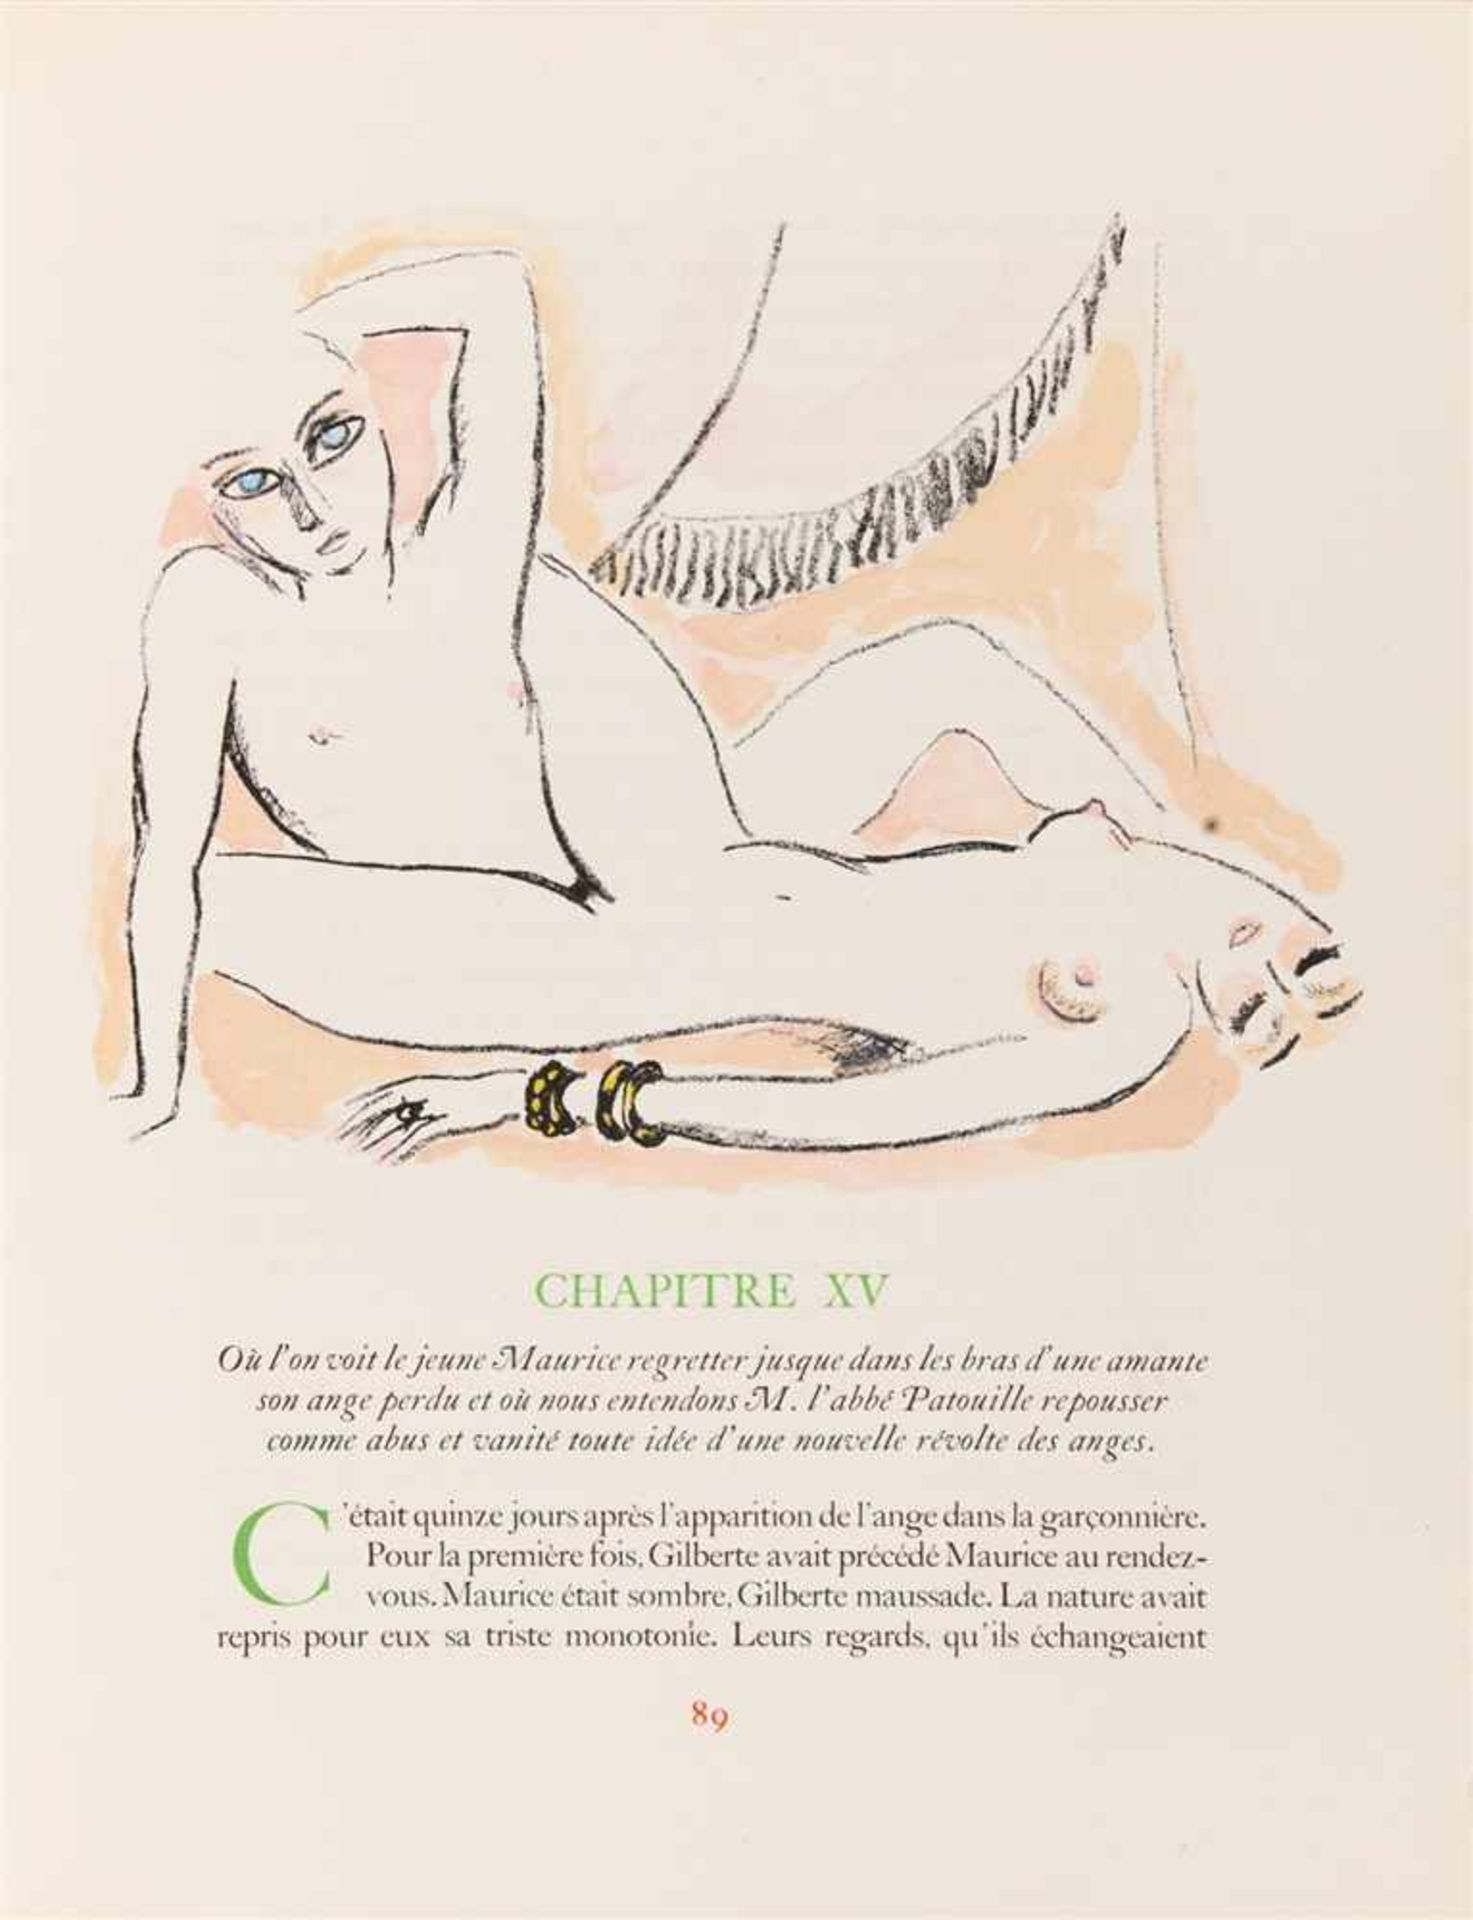 DONGEN, KEES VANANATOLE FRANCE: La Révolte des anges. Paris: Scripta et Picta 1951. 36,5 x 27,5